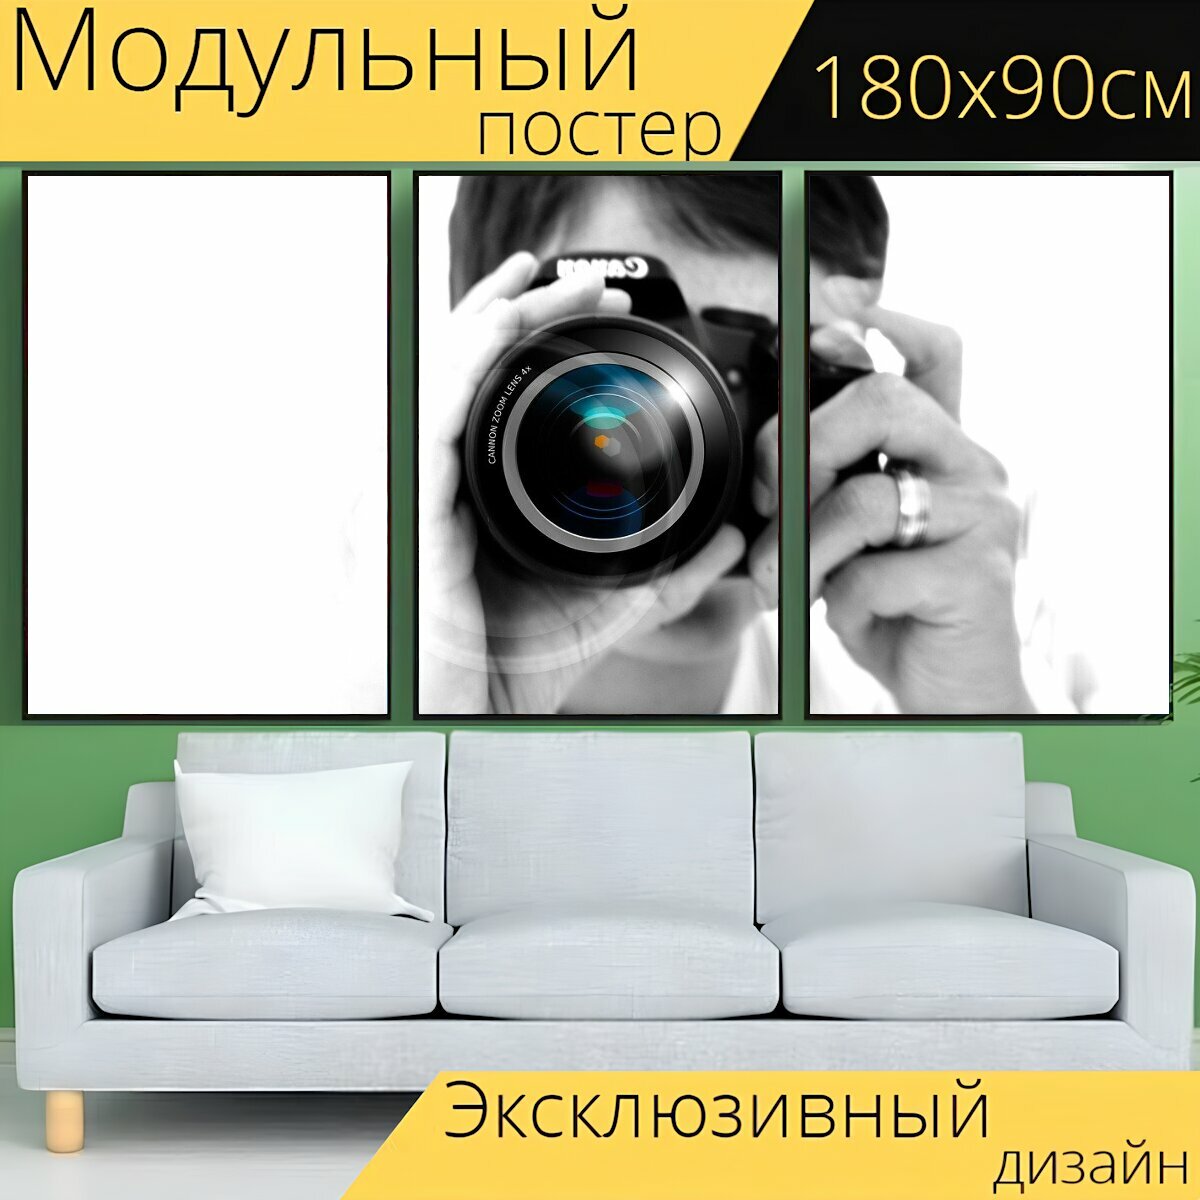 Модульный постер "Фотограф, камера, линза" 180 x 90 см. для интерьера